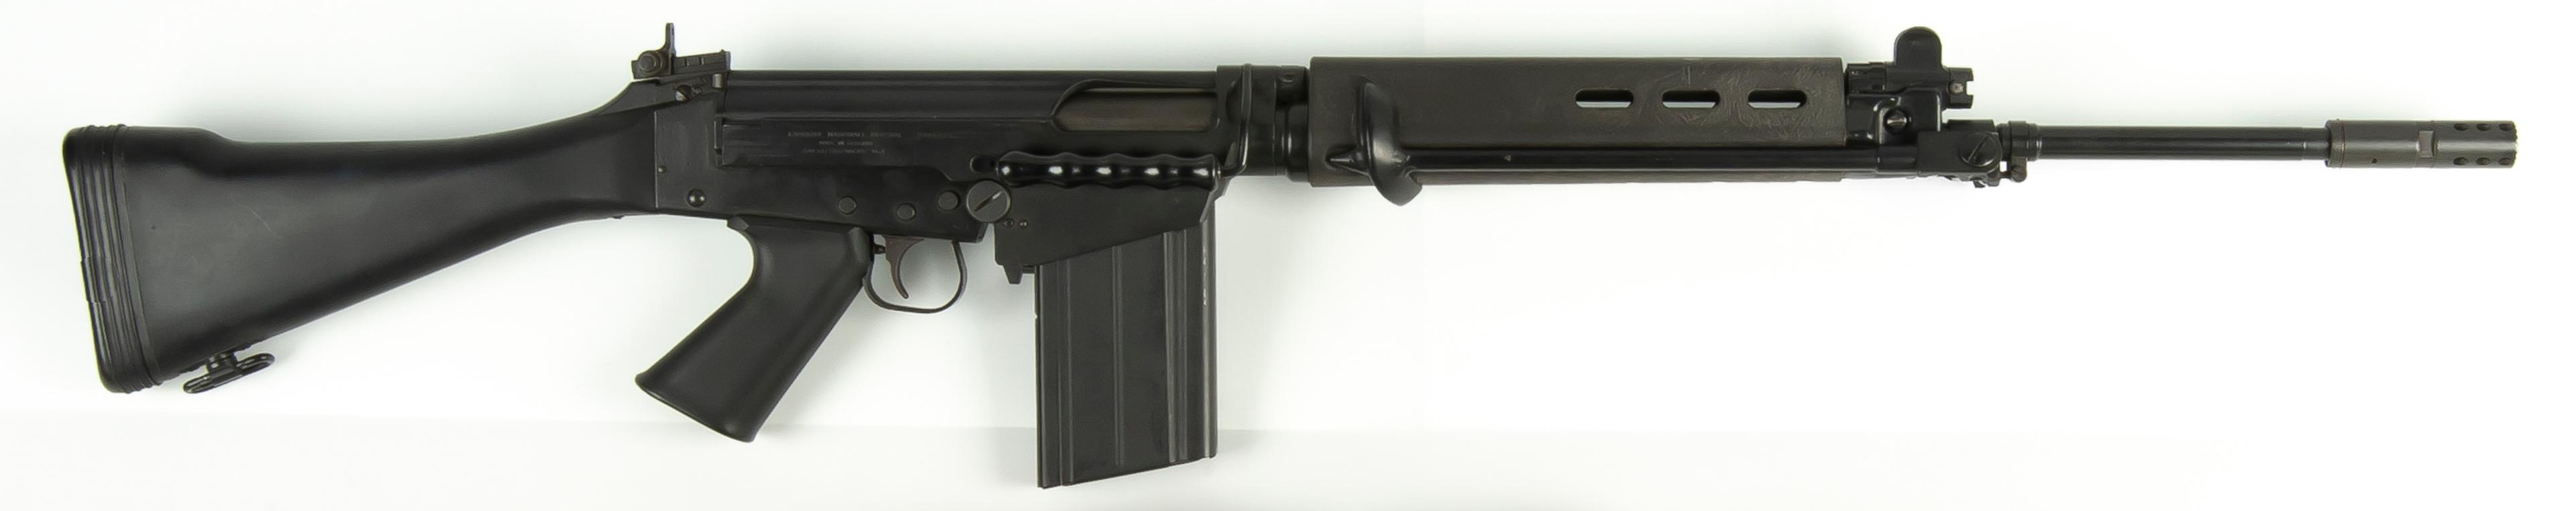 FN FAL semi-auto .308 Military-style rifle